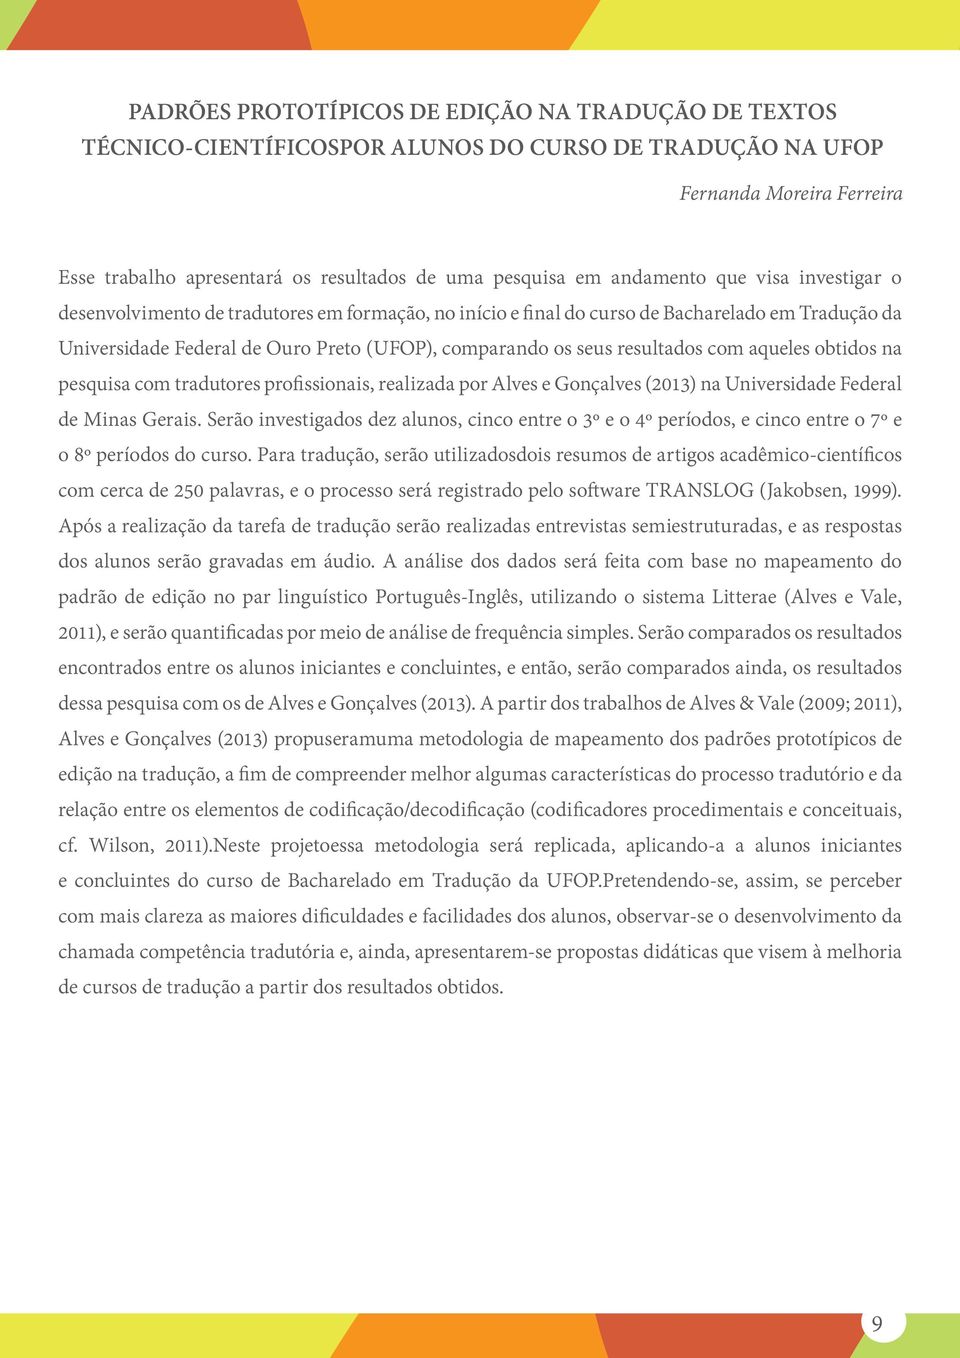 resultados com aqueles obtidos na pesquisa com tradutores profissionais, realizada por Alves e Gonçalves (2013) na Universidade Federal de Minas Gerais.